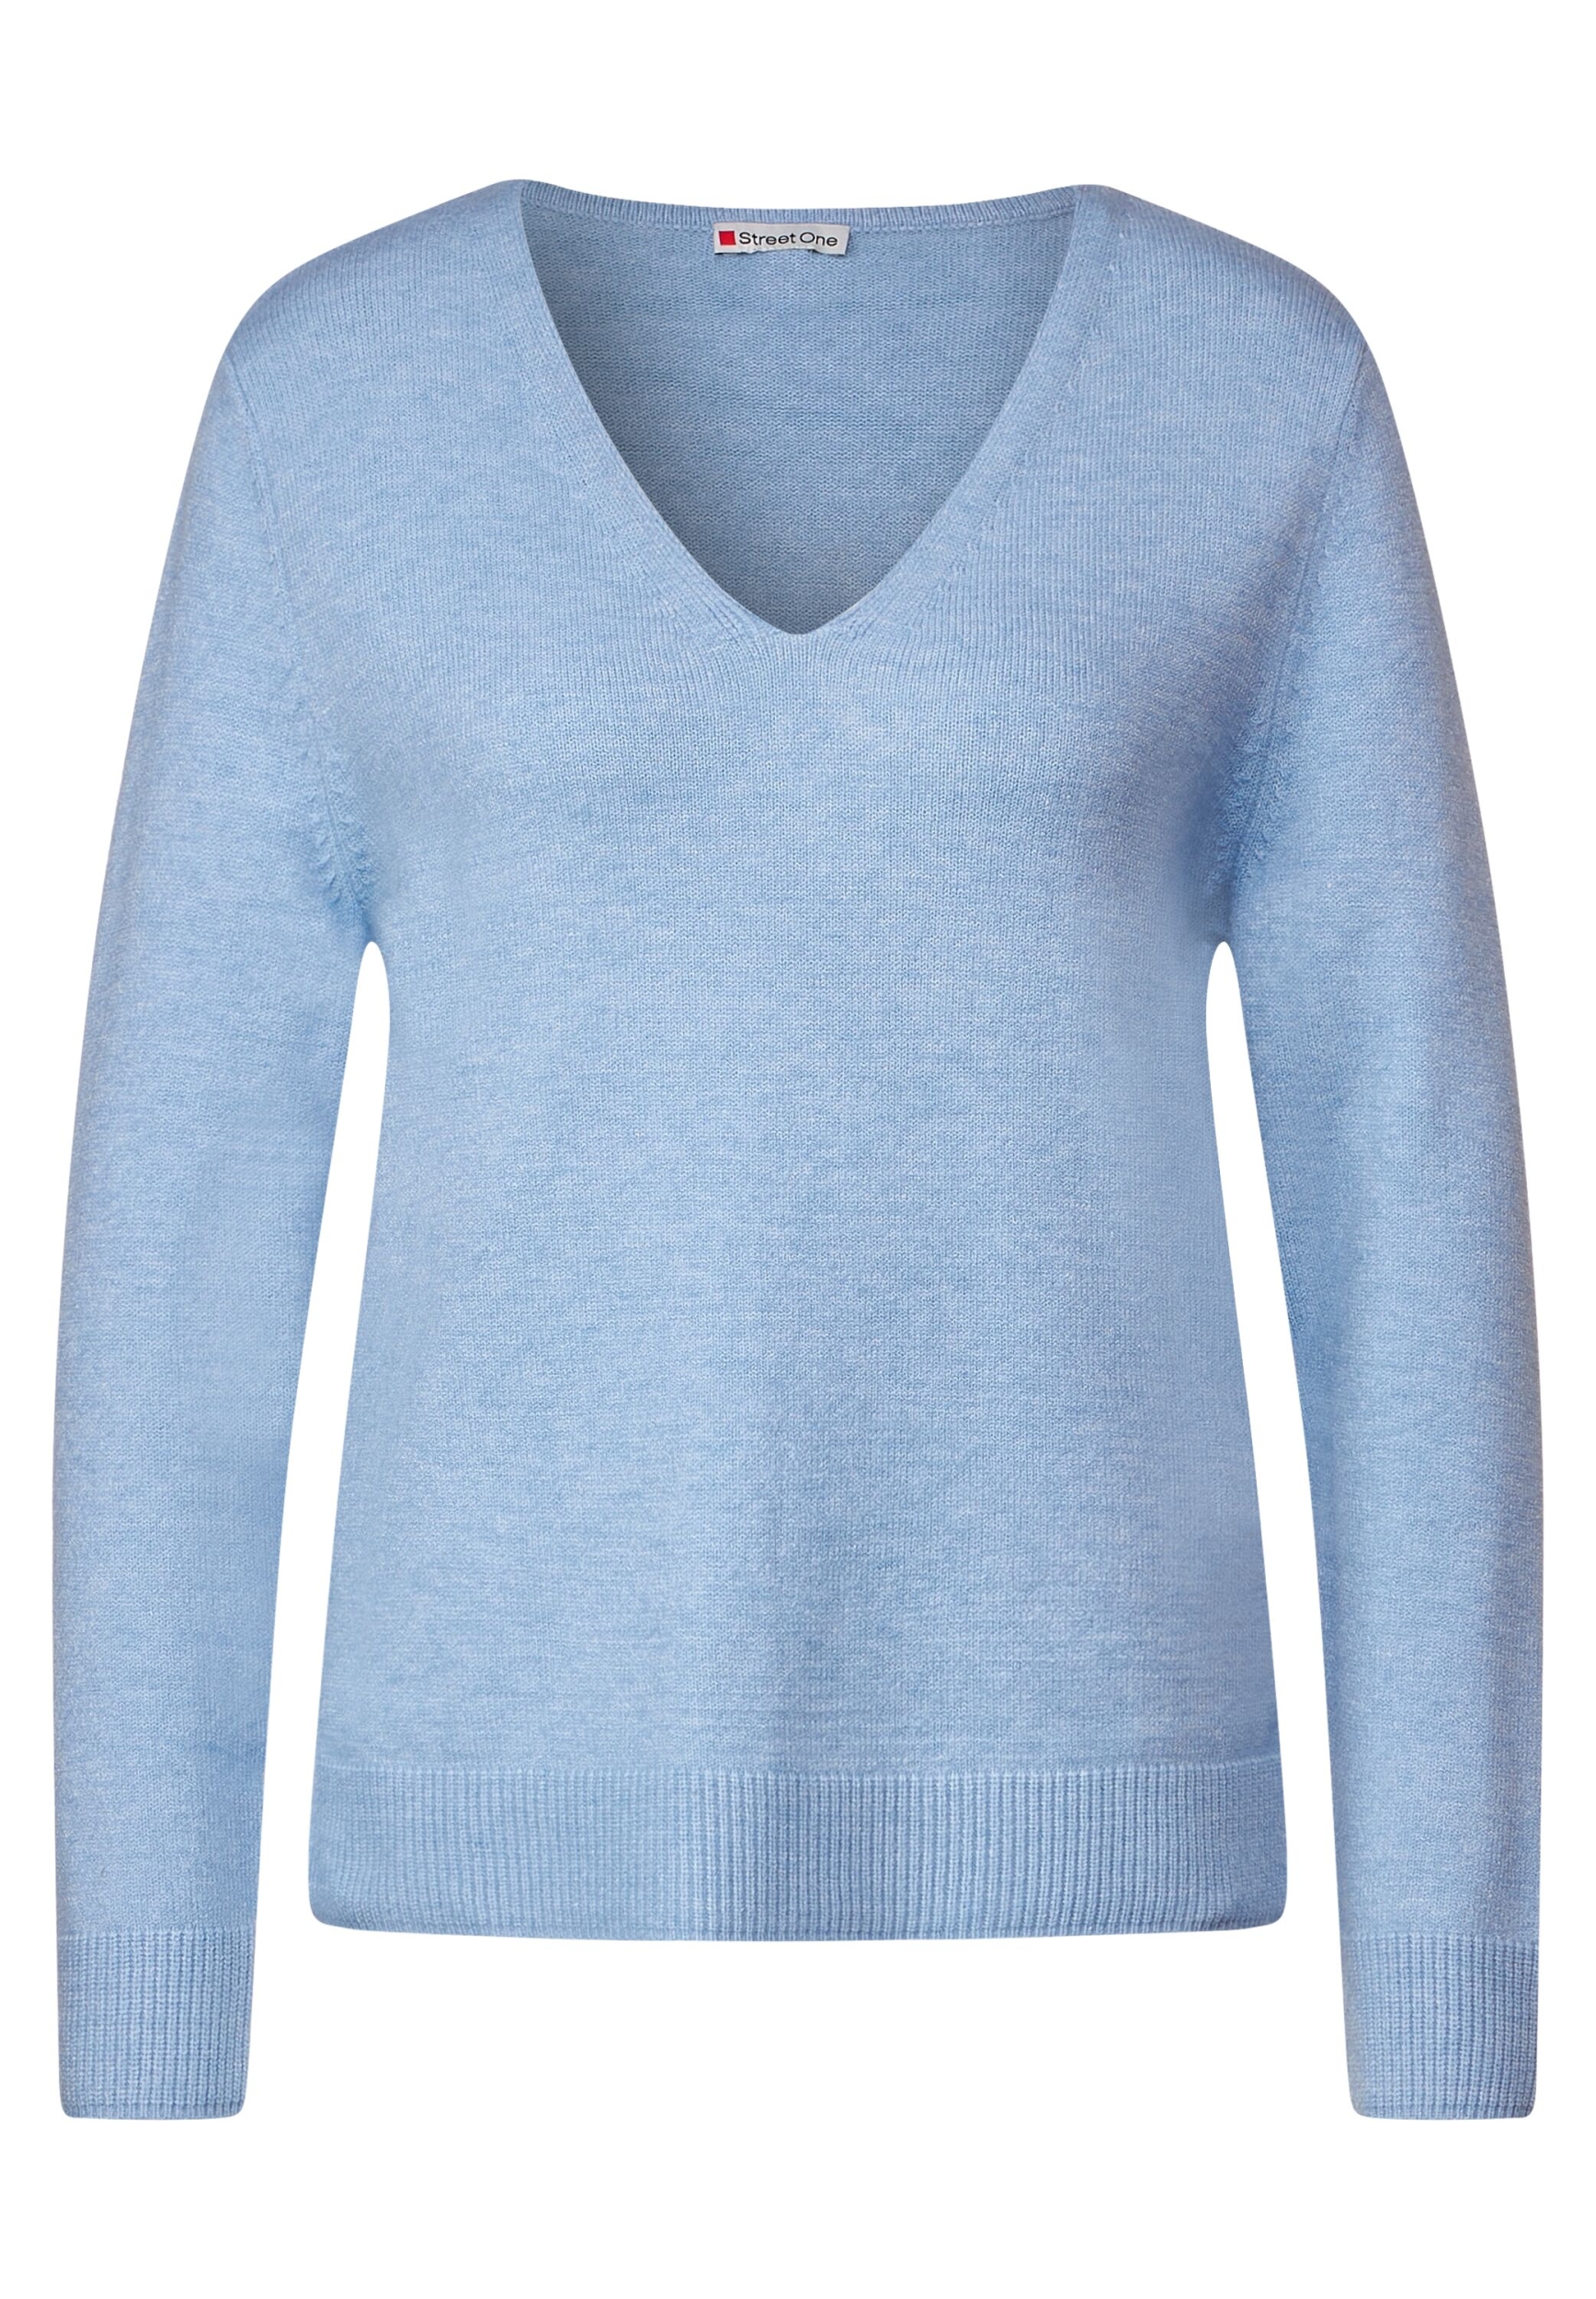 | | blue feather QR v-neck | 40 LTD A302343-14962-40 melange sweater